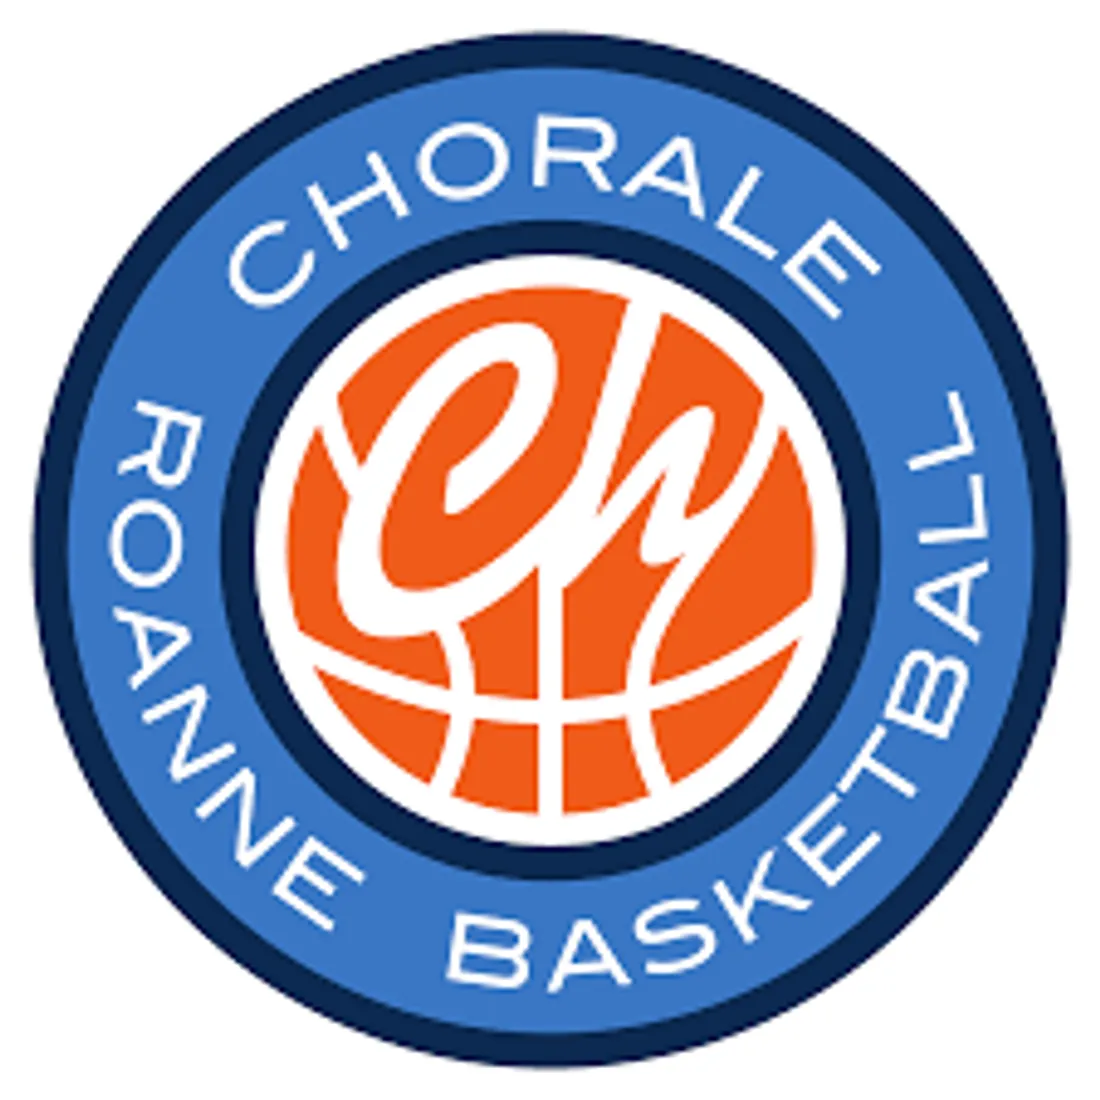 Chorale de Roanne / Cholet